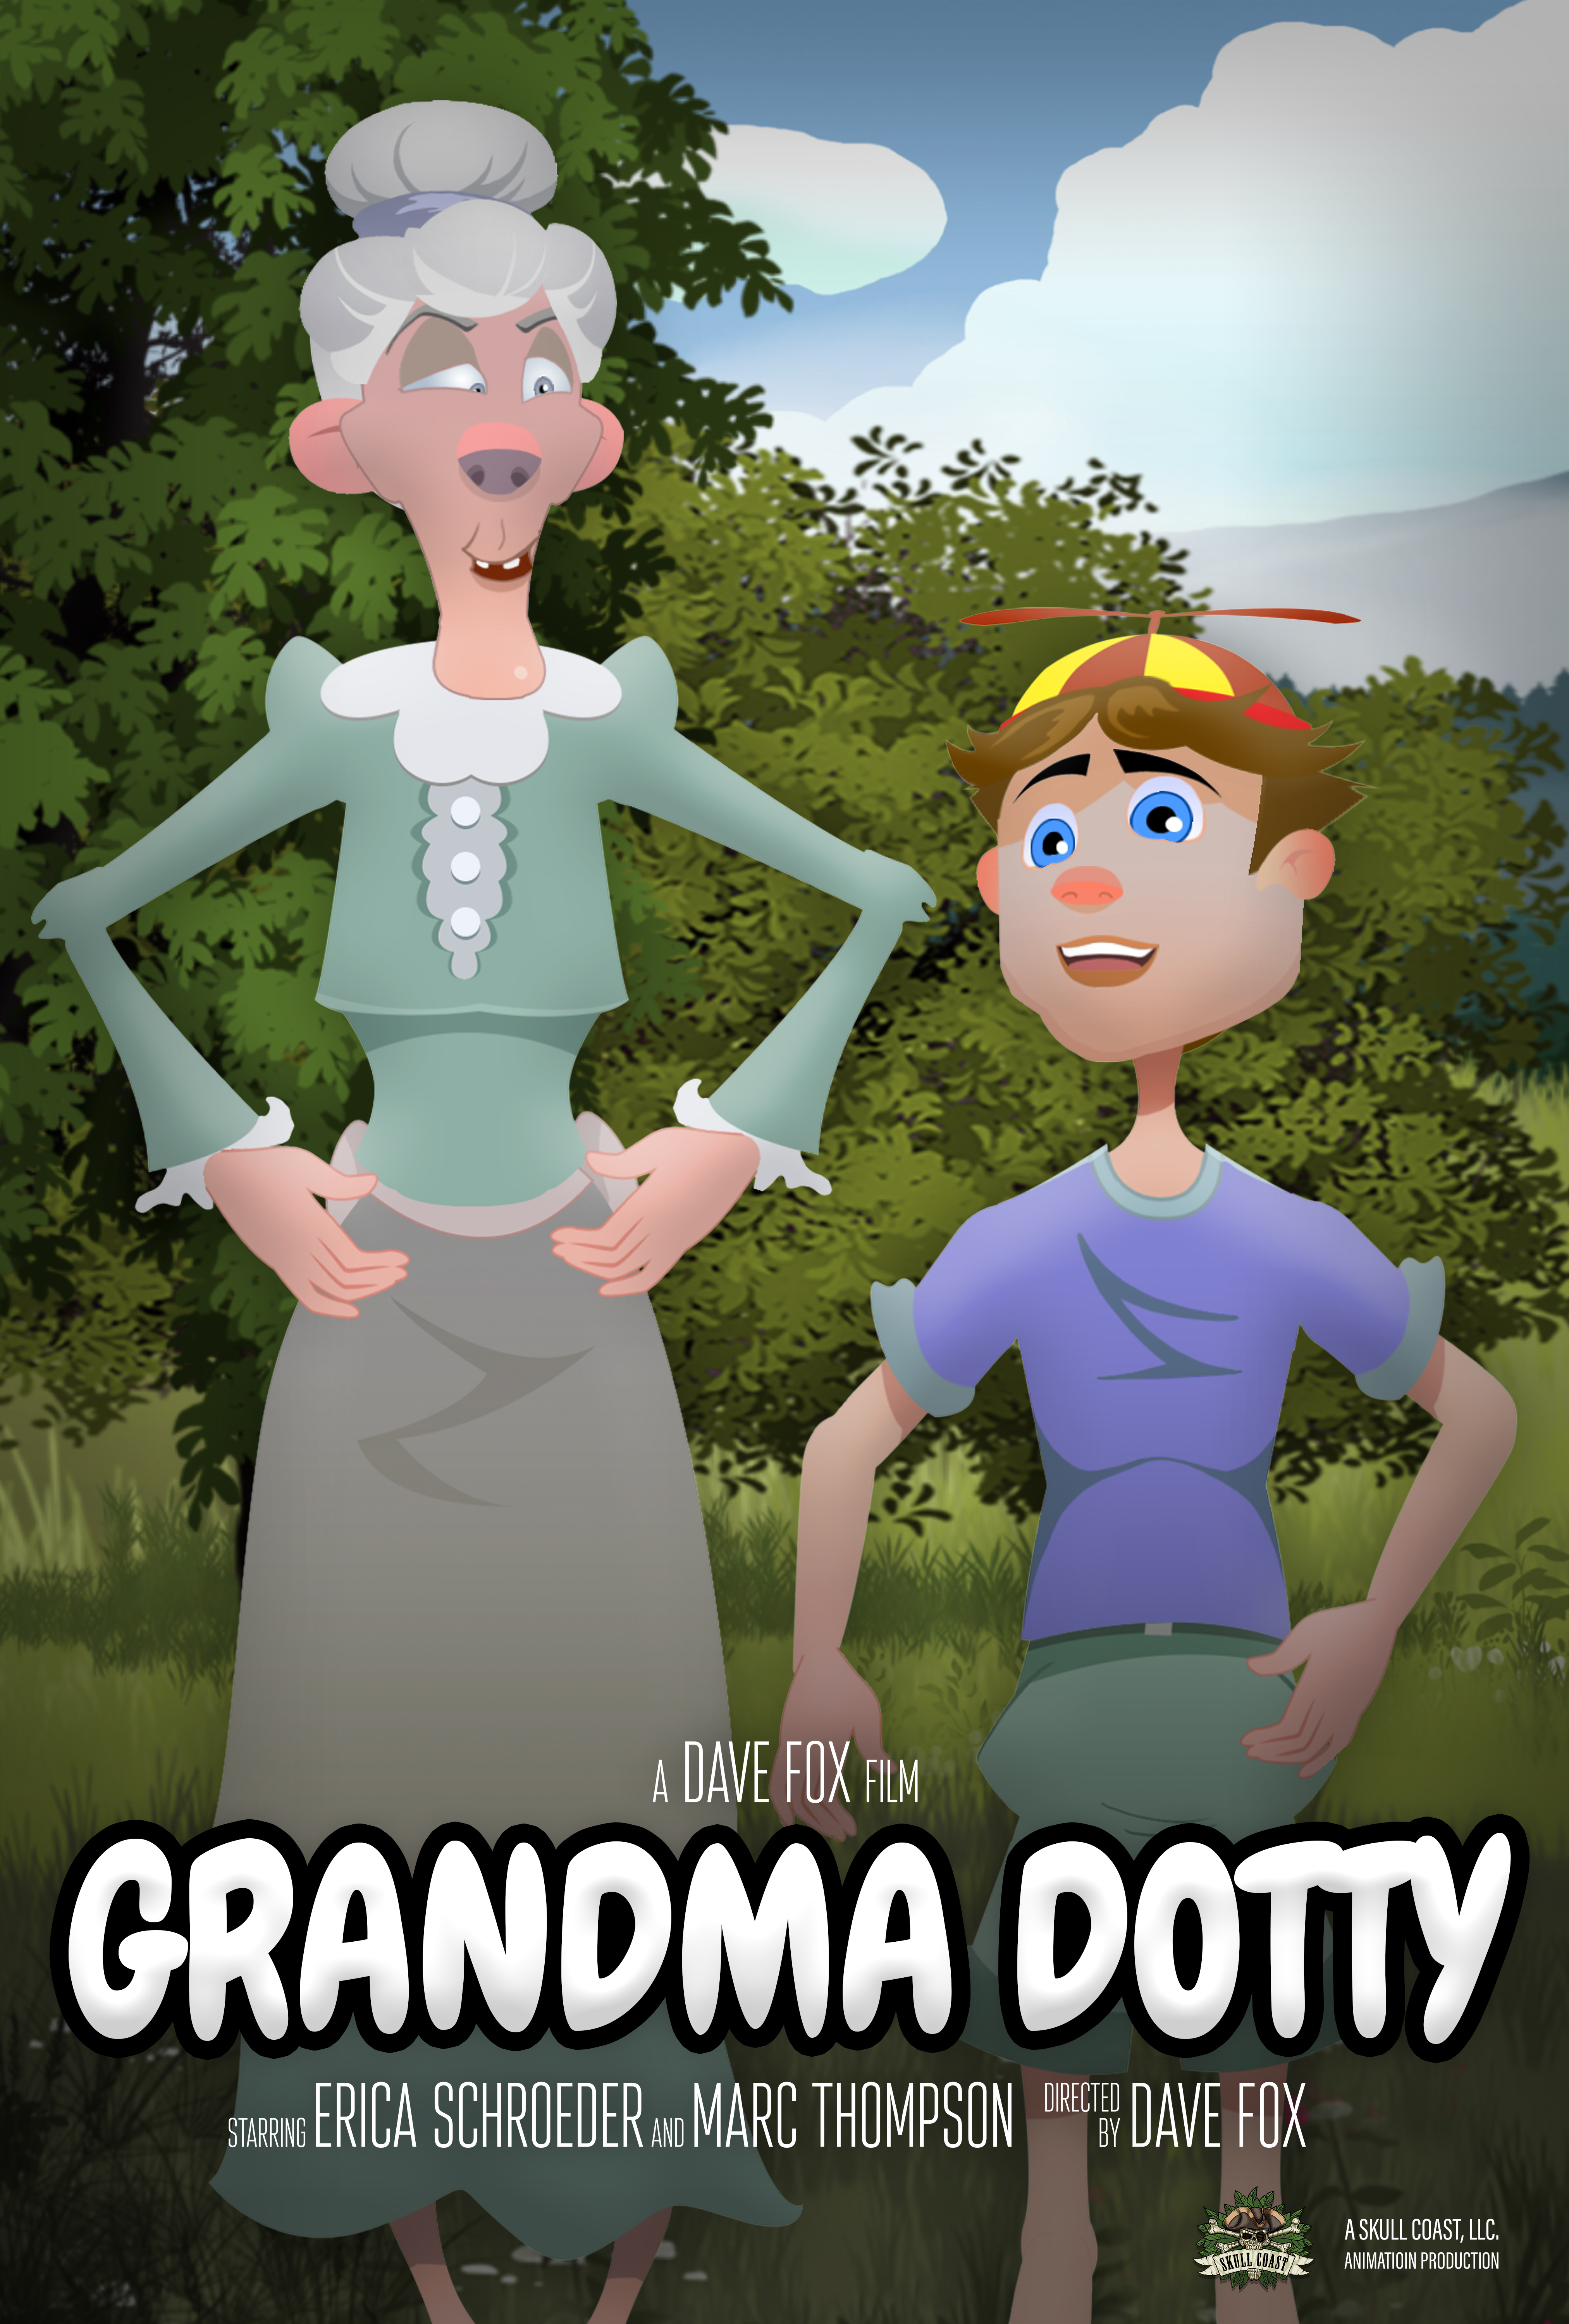 Grandma Dotty